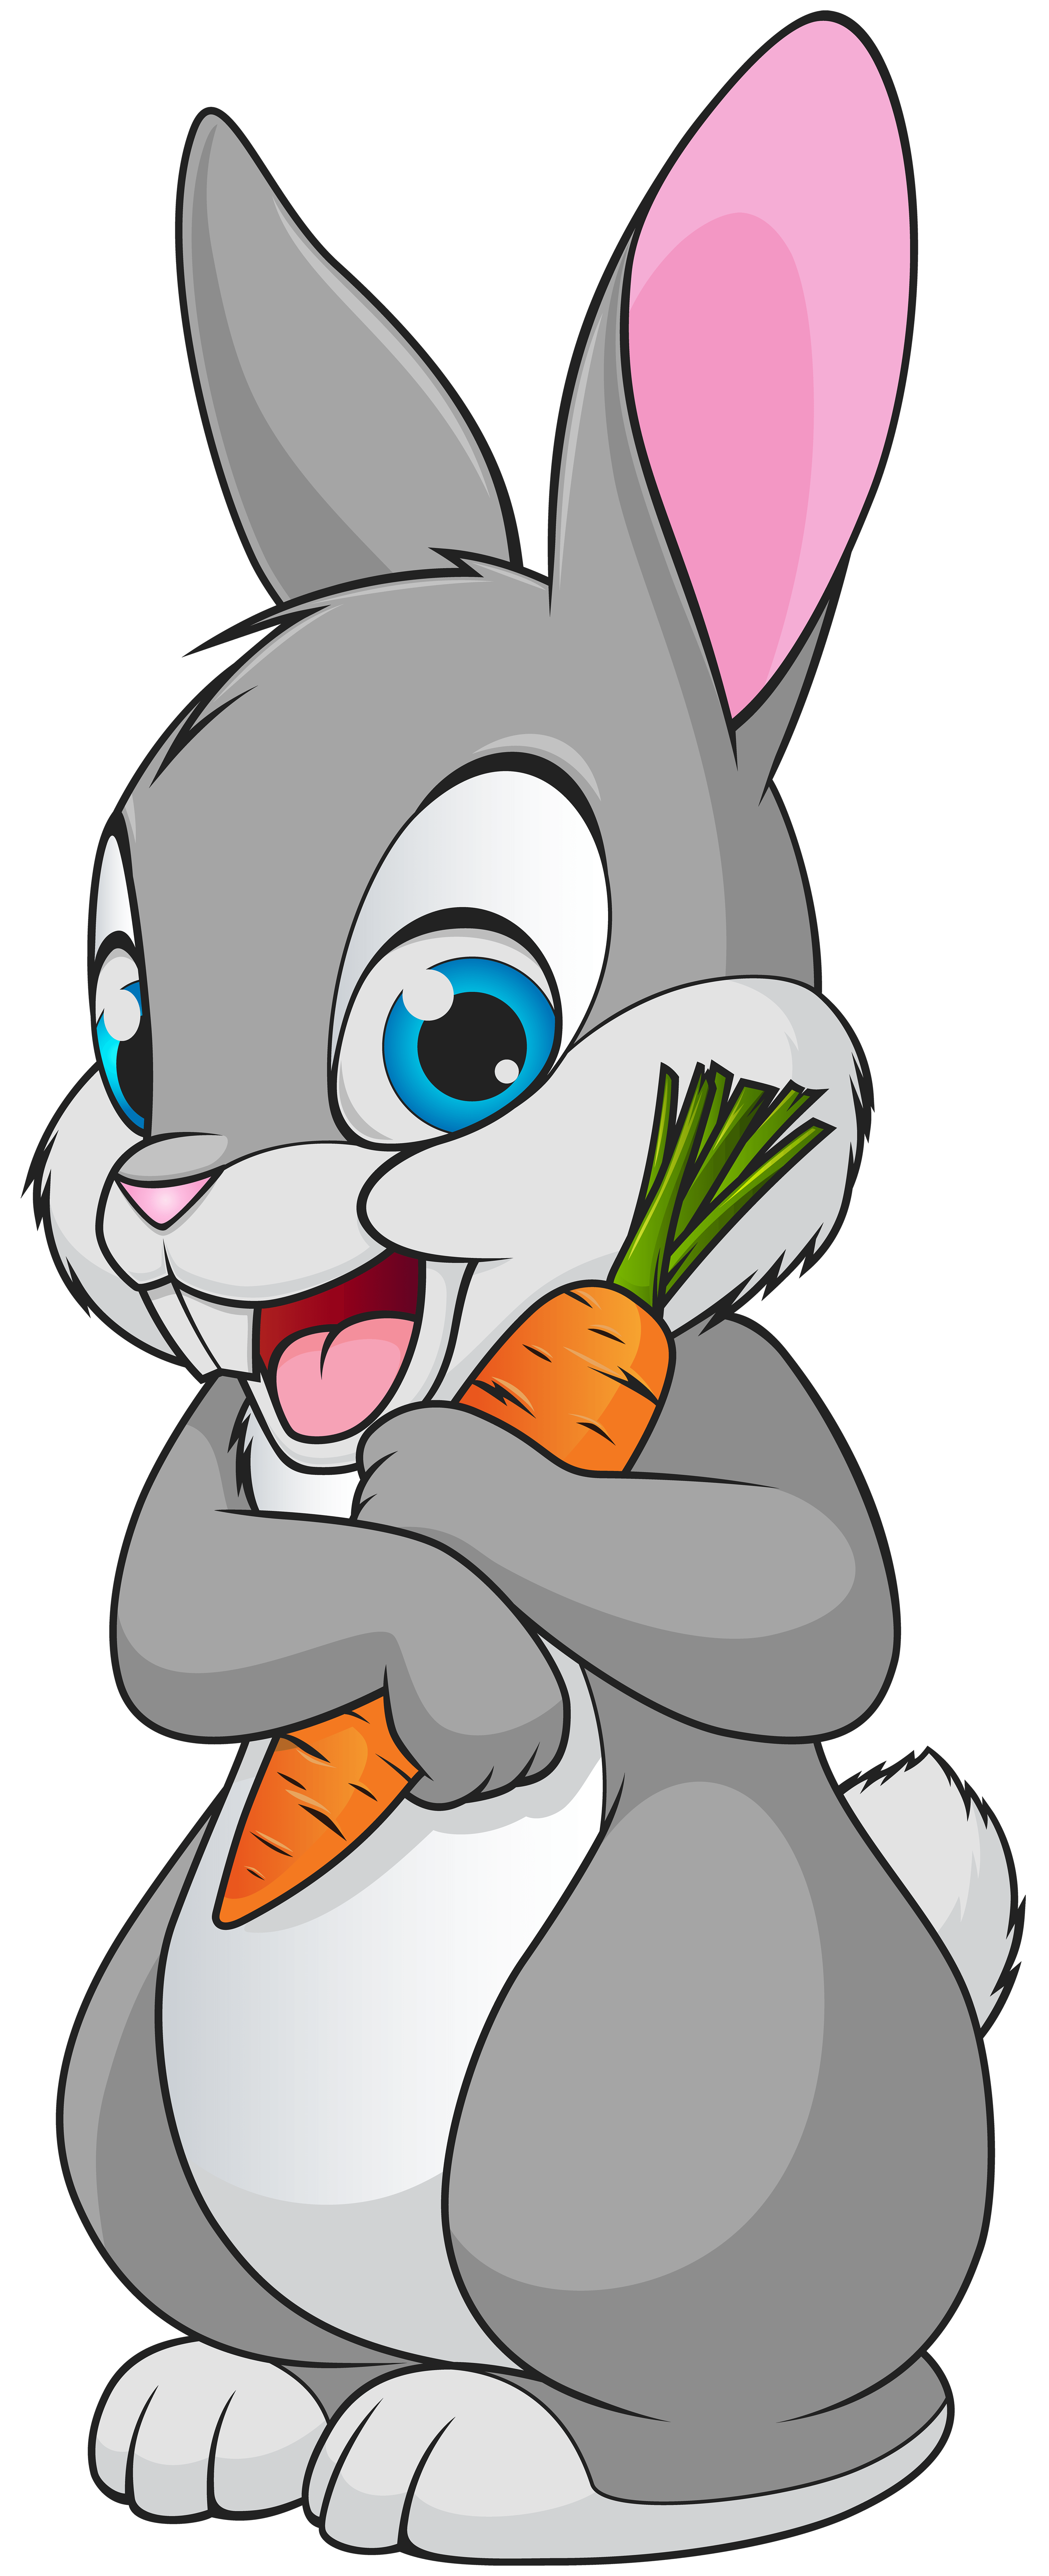 Cute Cartoon Bunny Wallpapers - Top Những Hình Ảnh Đẹp